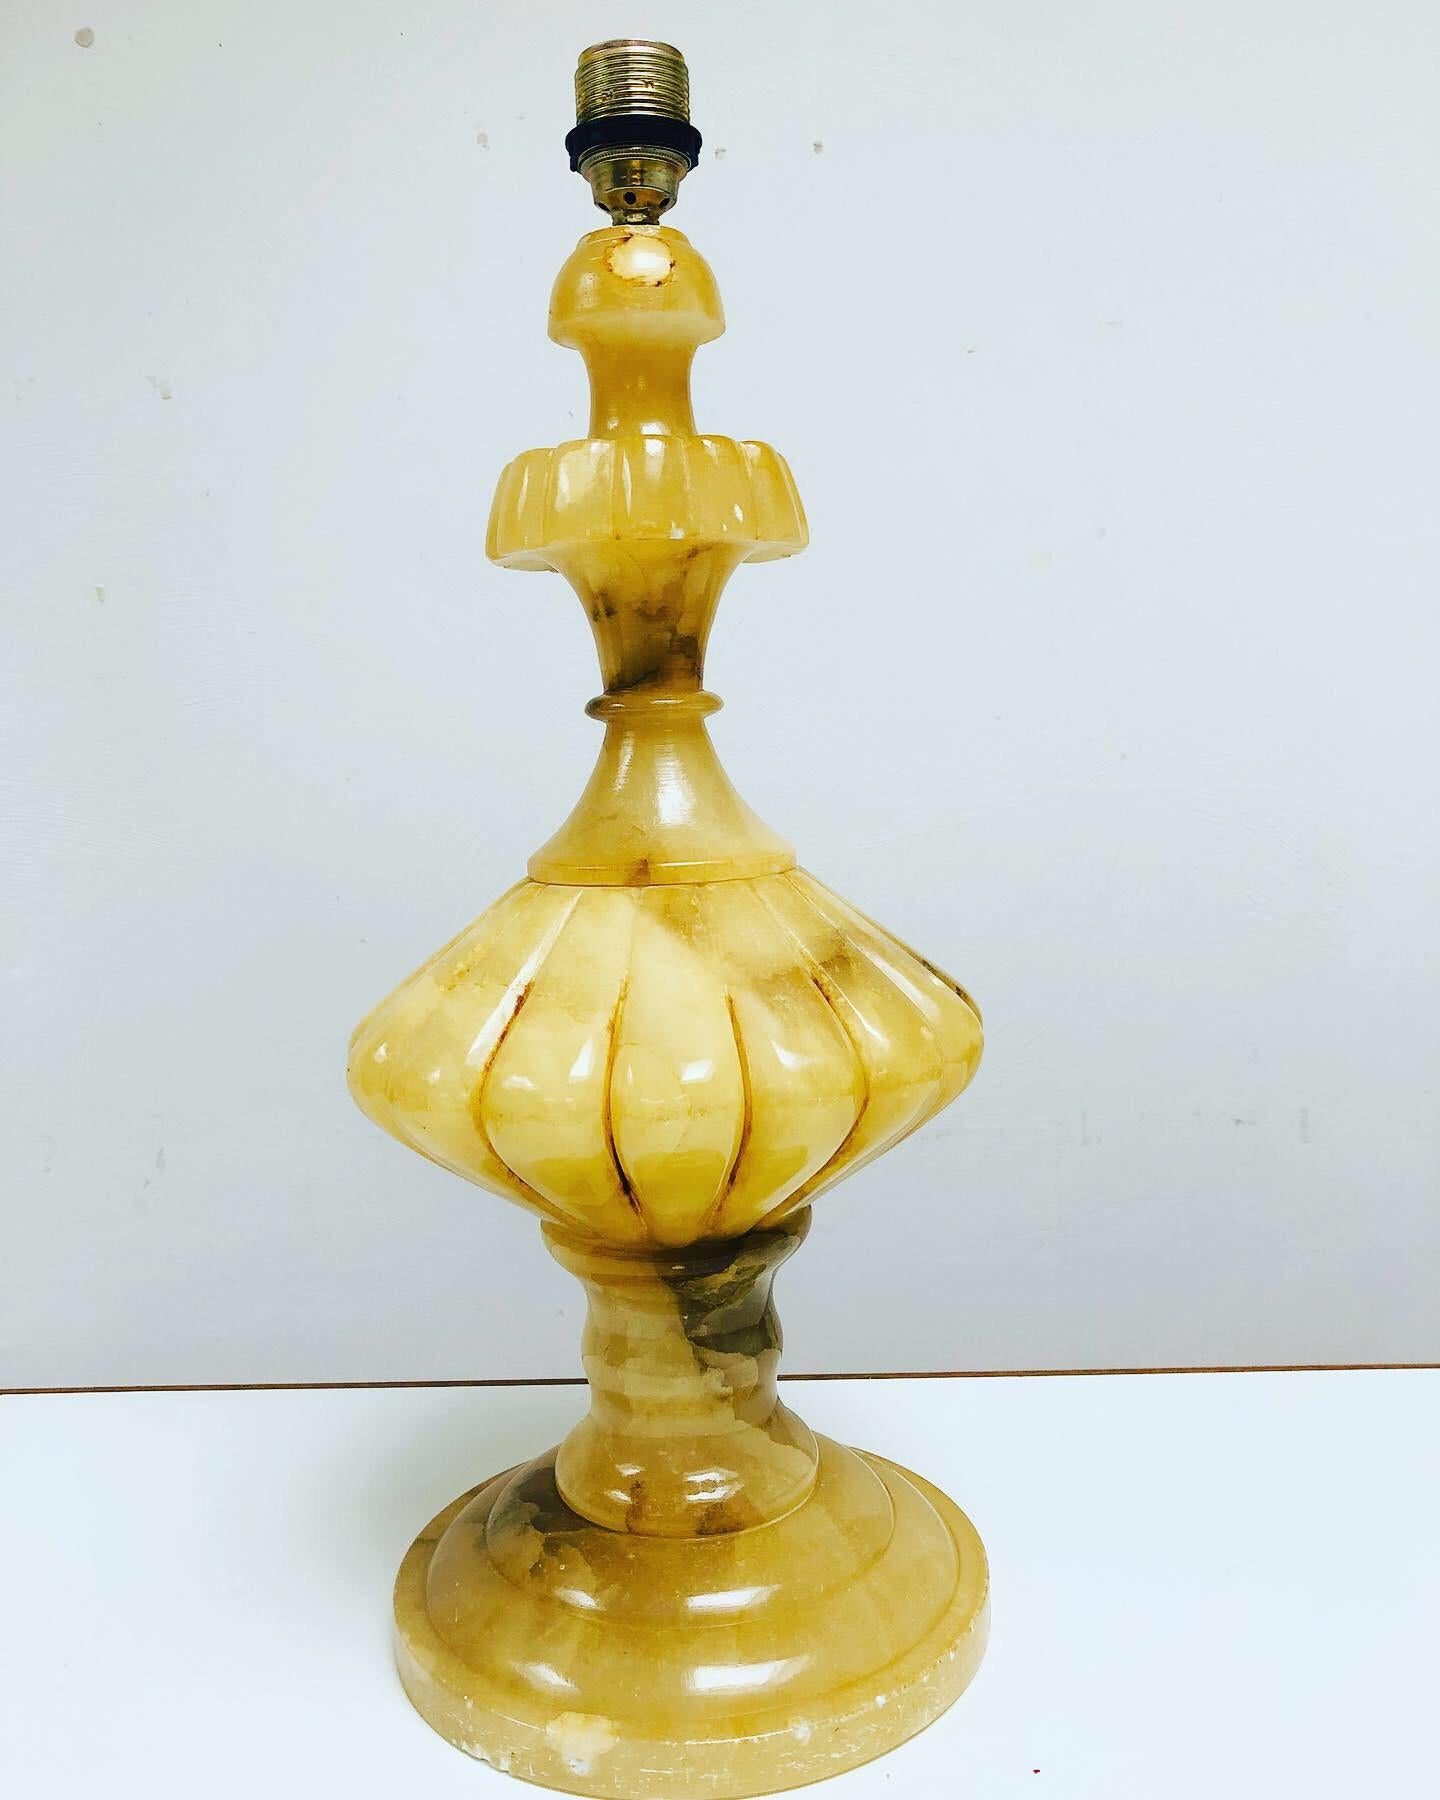 Lampe de table élégante en albâtre de style baroque. L'albâtre a une couleur jaunâtre naturelle et chaude avec des veines brun clair. 